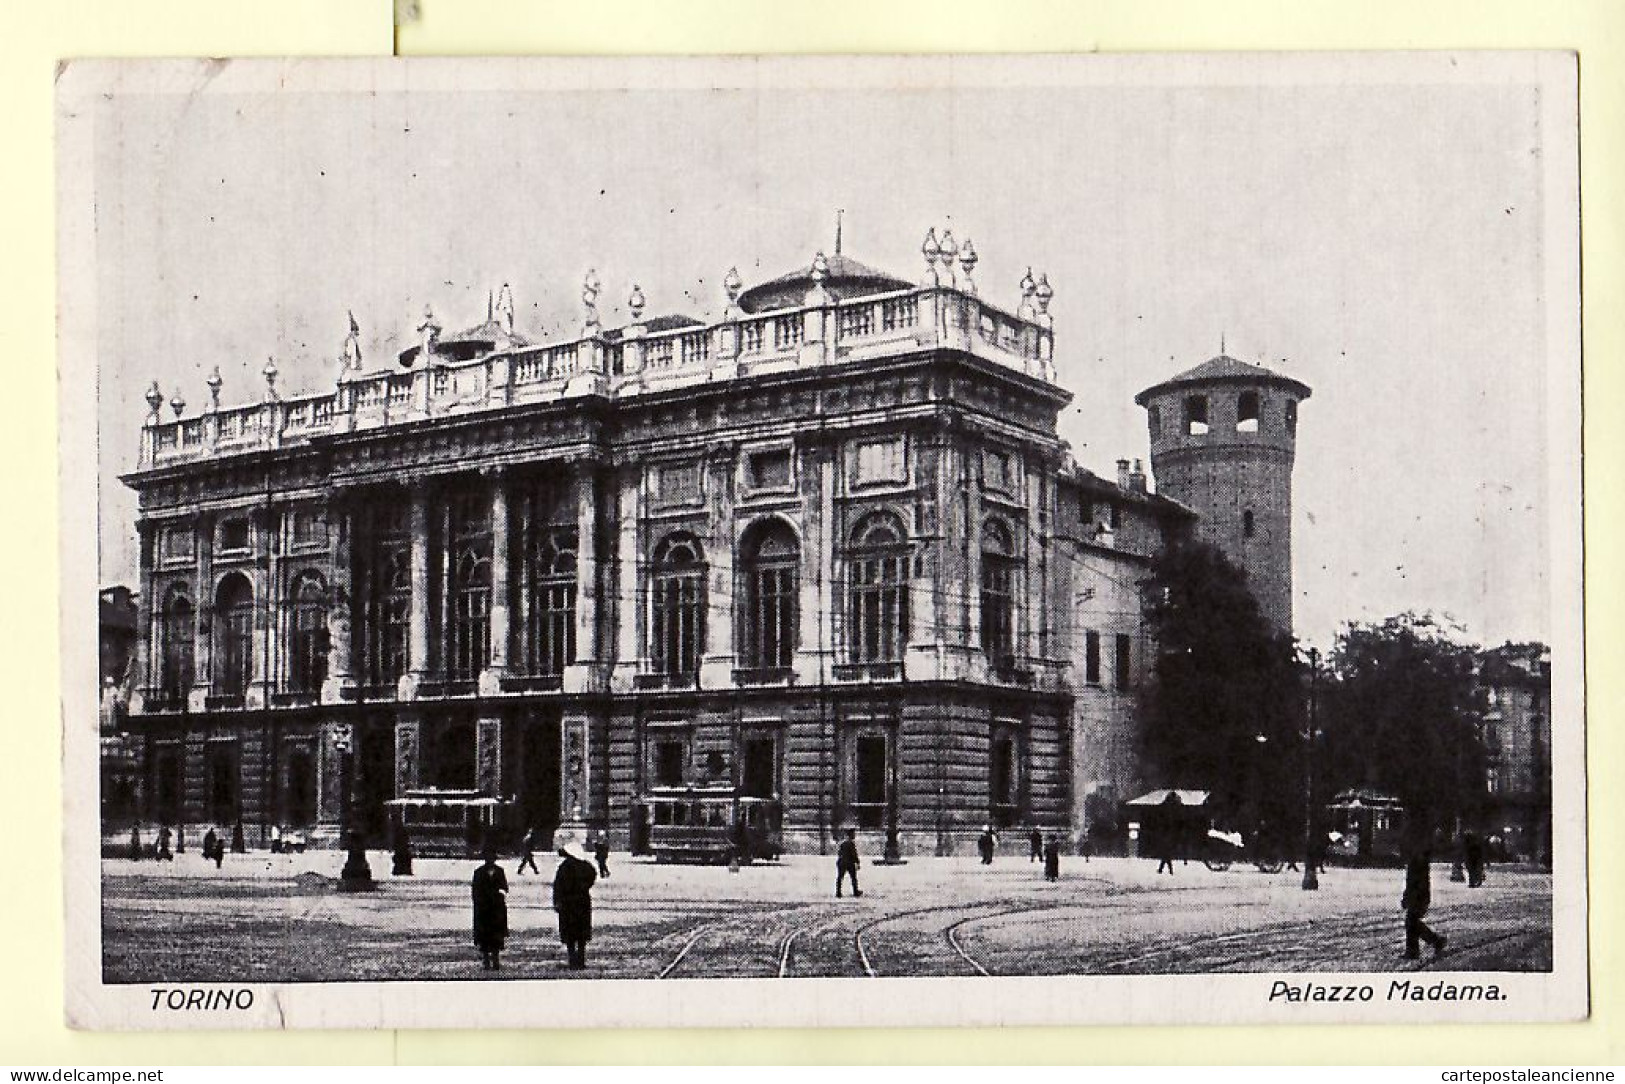 26836 / ⭐ Piemonte TORINO Turin PALAZZO MADAMA Circulato 29.12.1932 à GAUDUCHEAU Paris - Otros Monumentos Y Edificios